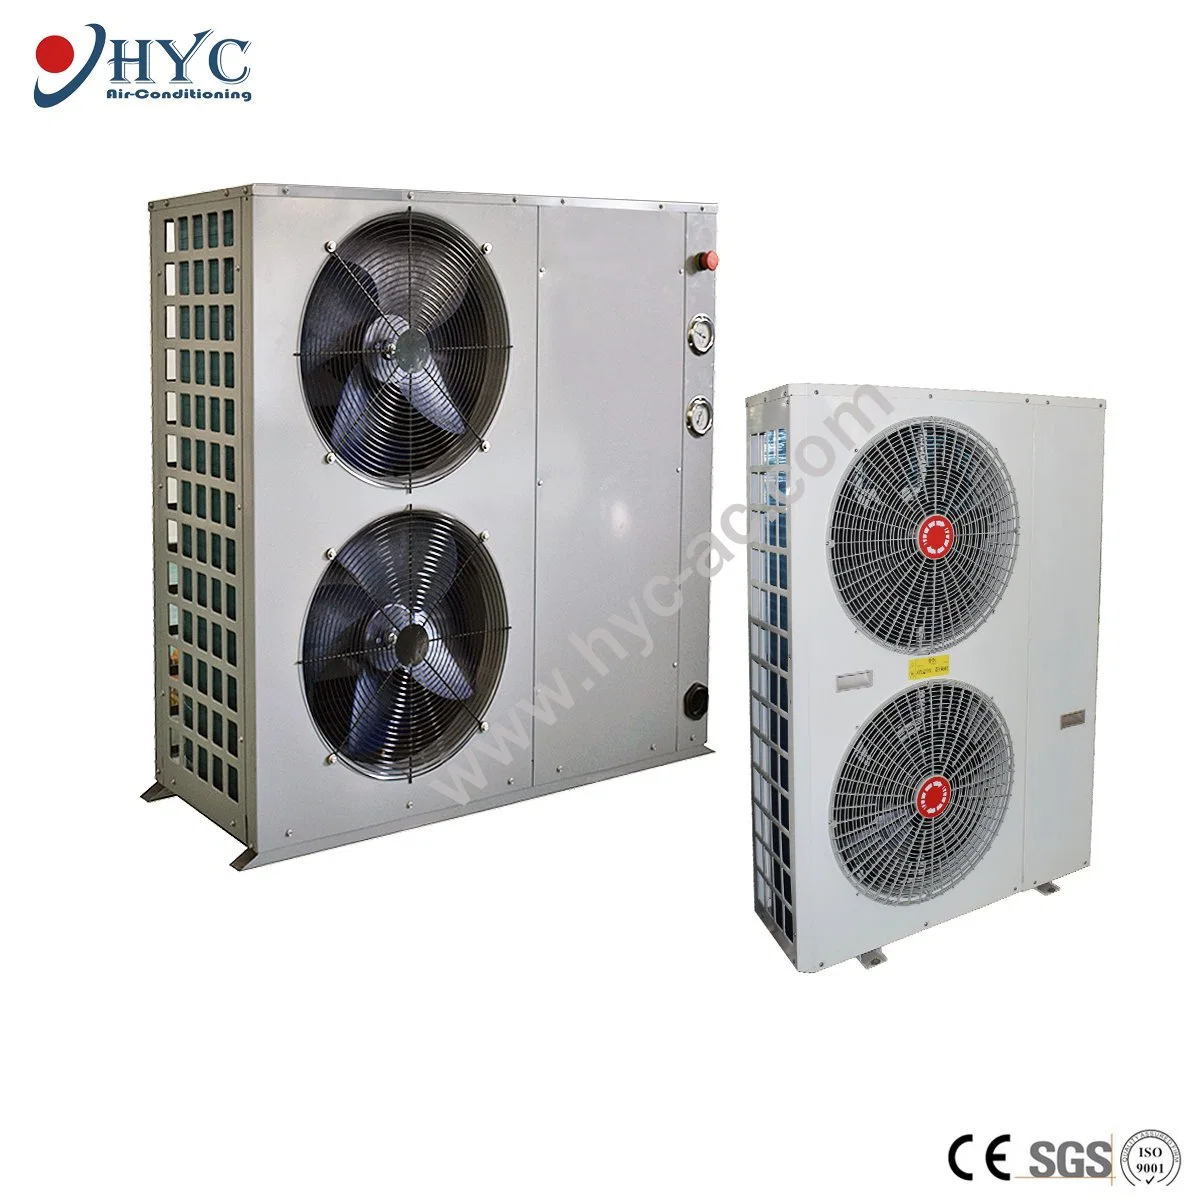 Système de climatisation industrielle à refroidissement par air, pompe à chaleur/refroidisseur d'eau modulaire à compresseur scroll.